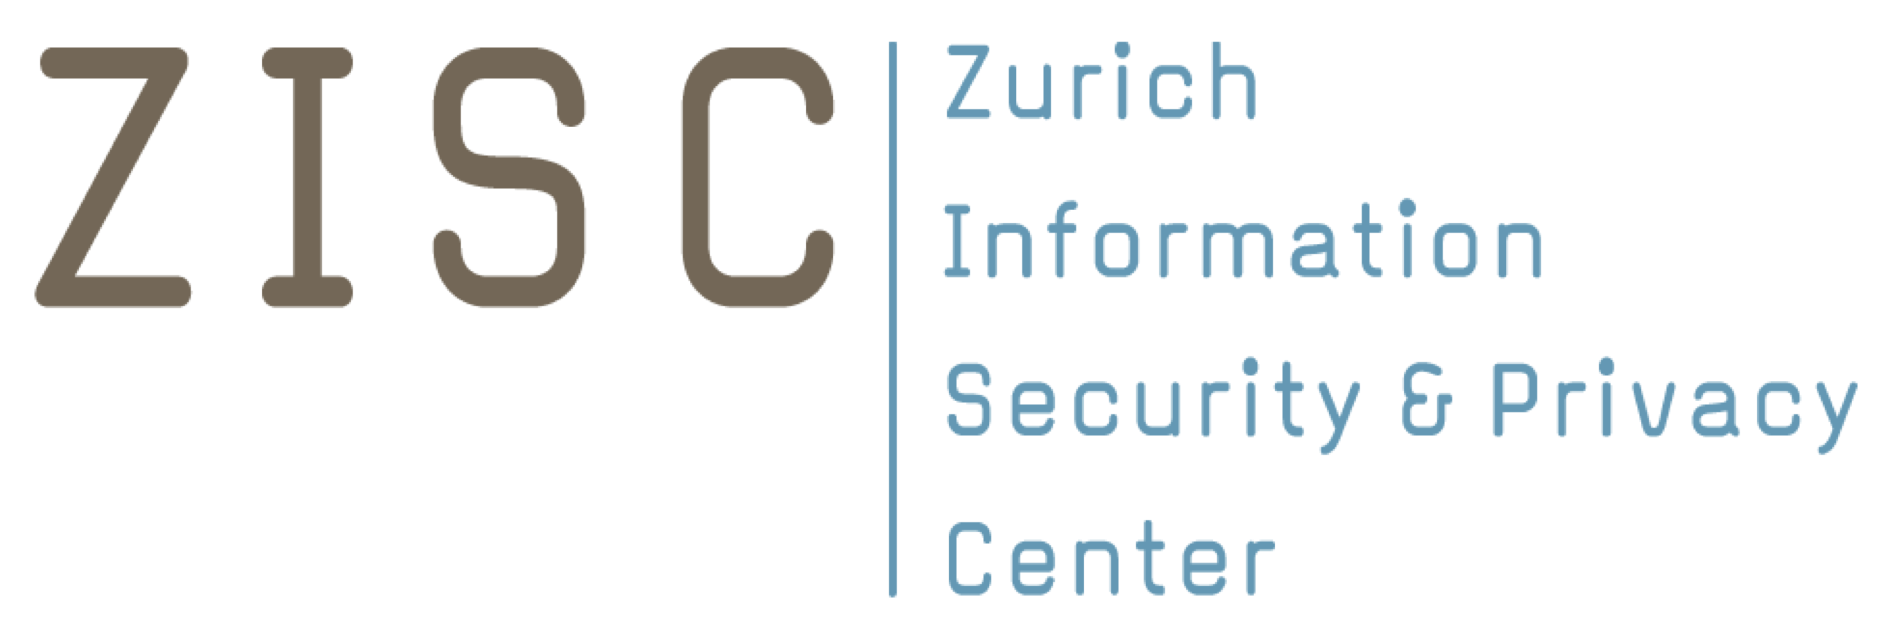 ZISC - Zurich Information Security & Privacy Center